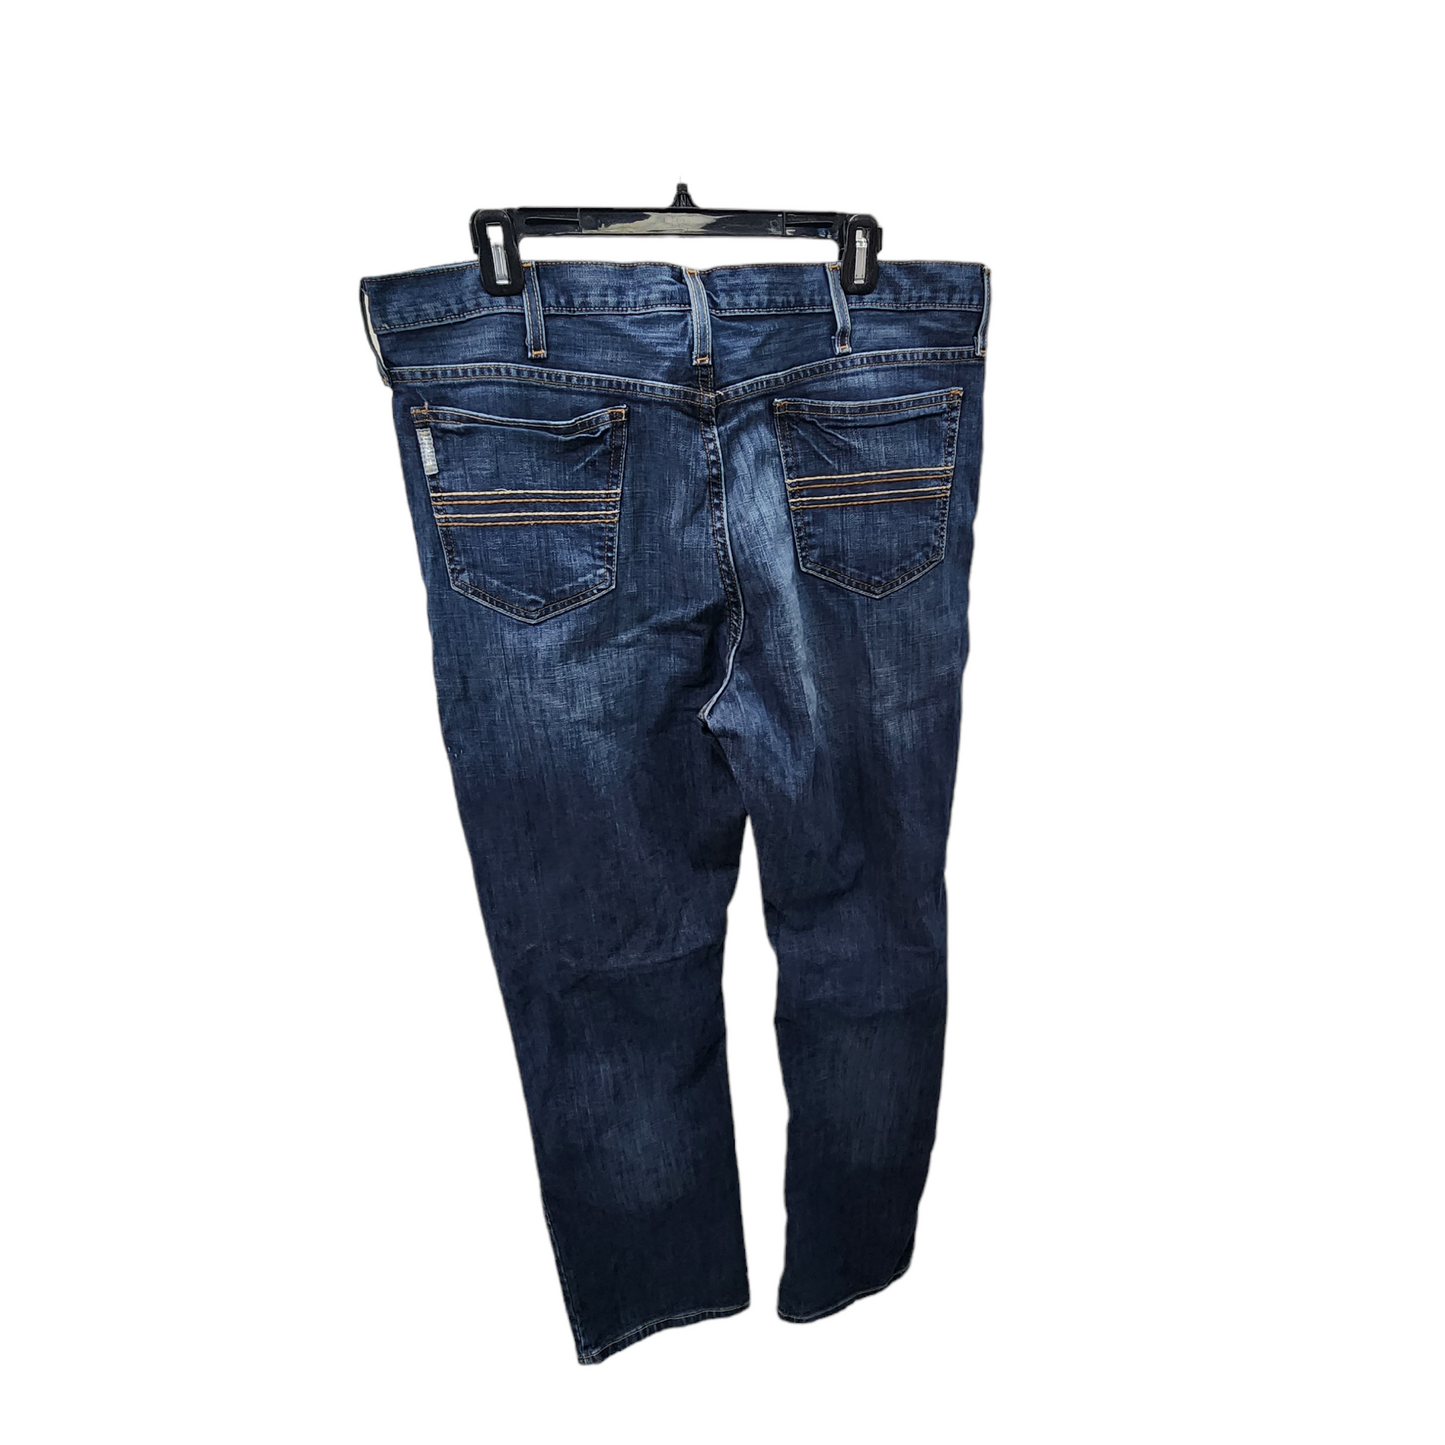 Cinch Straight Leg Western Men's Jeans Dark Washed - Men's 36 x 32